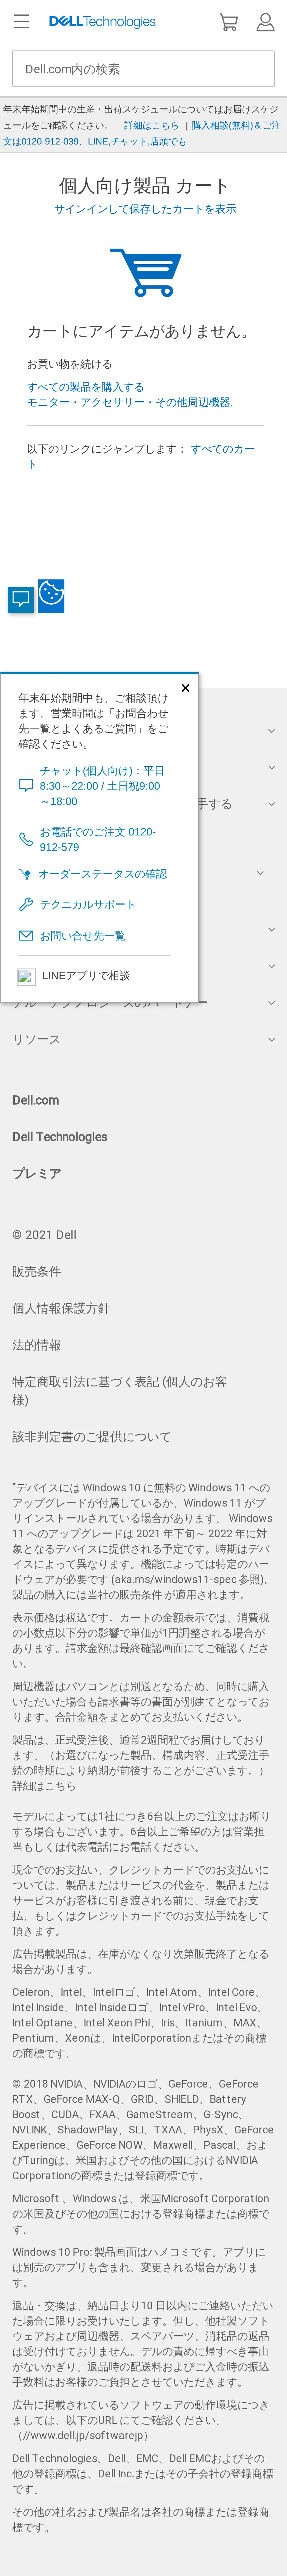 キャプチャ画面 会社名:デル株式会社プロジェクト名:DELL JAPAN(個人向け) 画面名:カート確認 デバイス名:SPカテゴリ:EC・オンラインショップタグ:カート確認